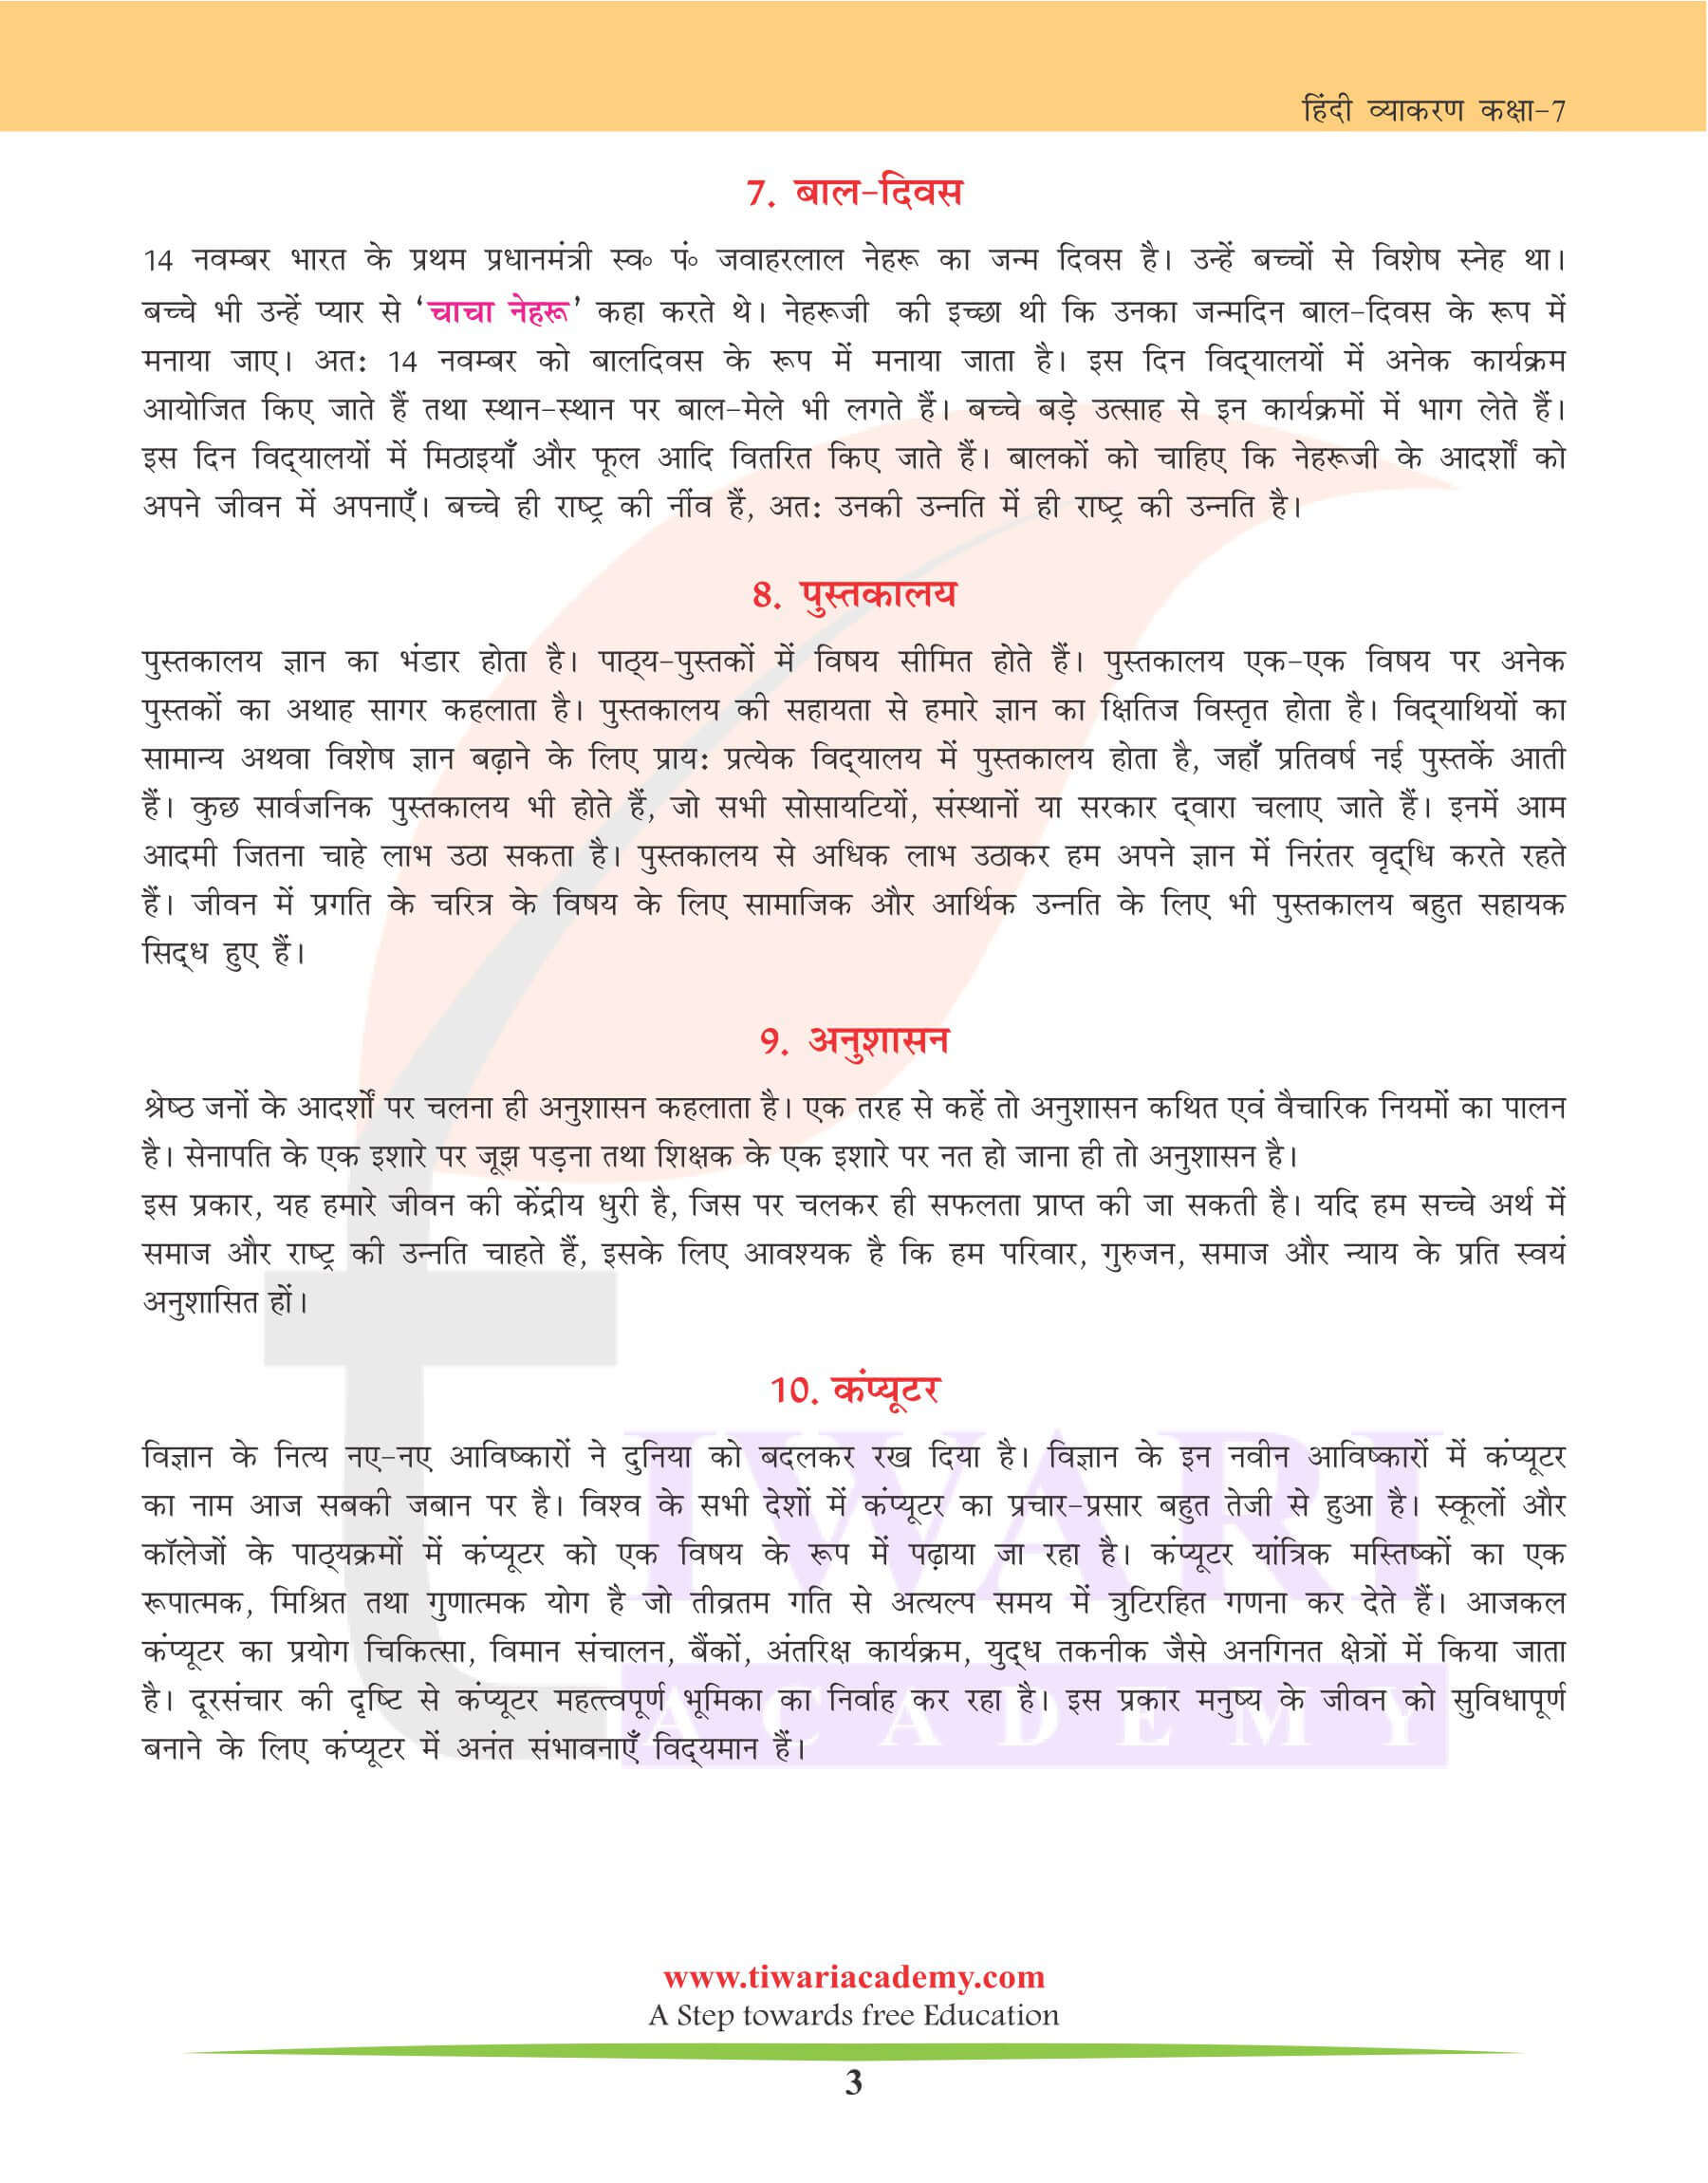 कक्षा 7 हिंदी व्याकरण में अनुच्छेद लेखन के उदाहरण